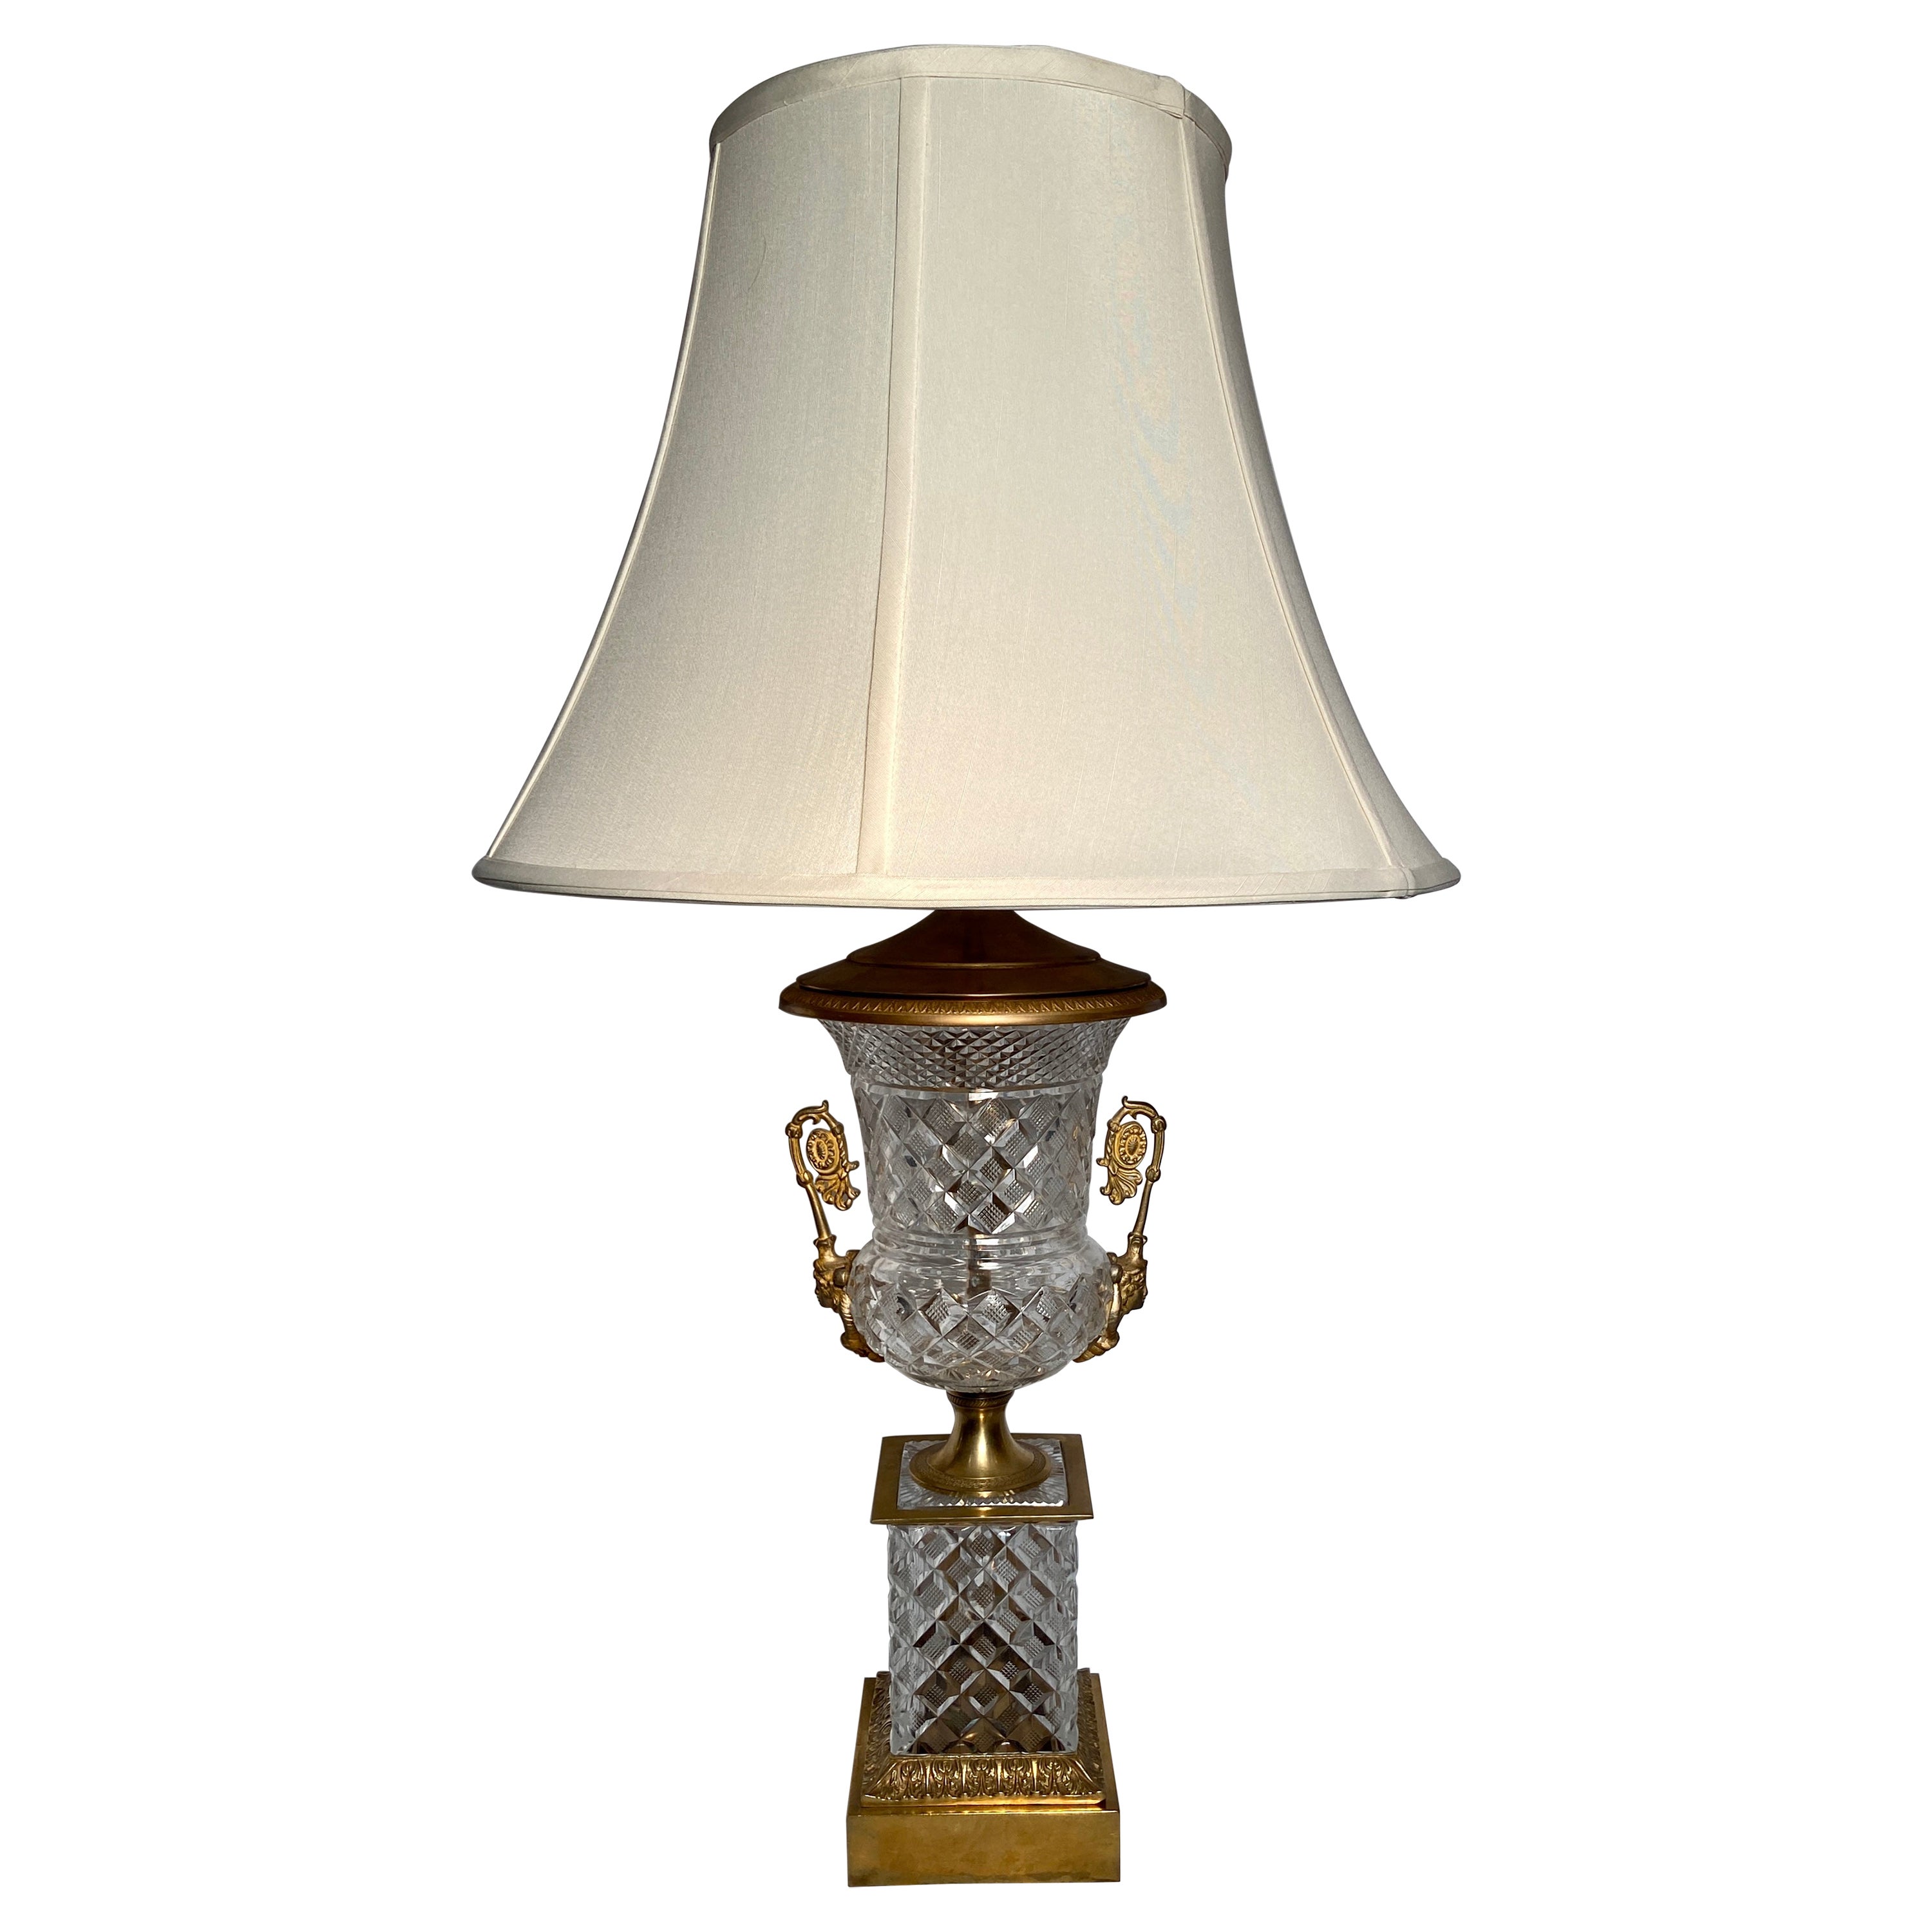 Lampe française ancienne en cristal taillé et bronze doré, vers 1900